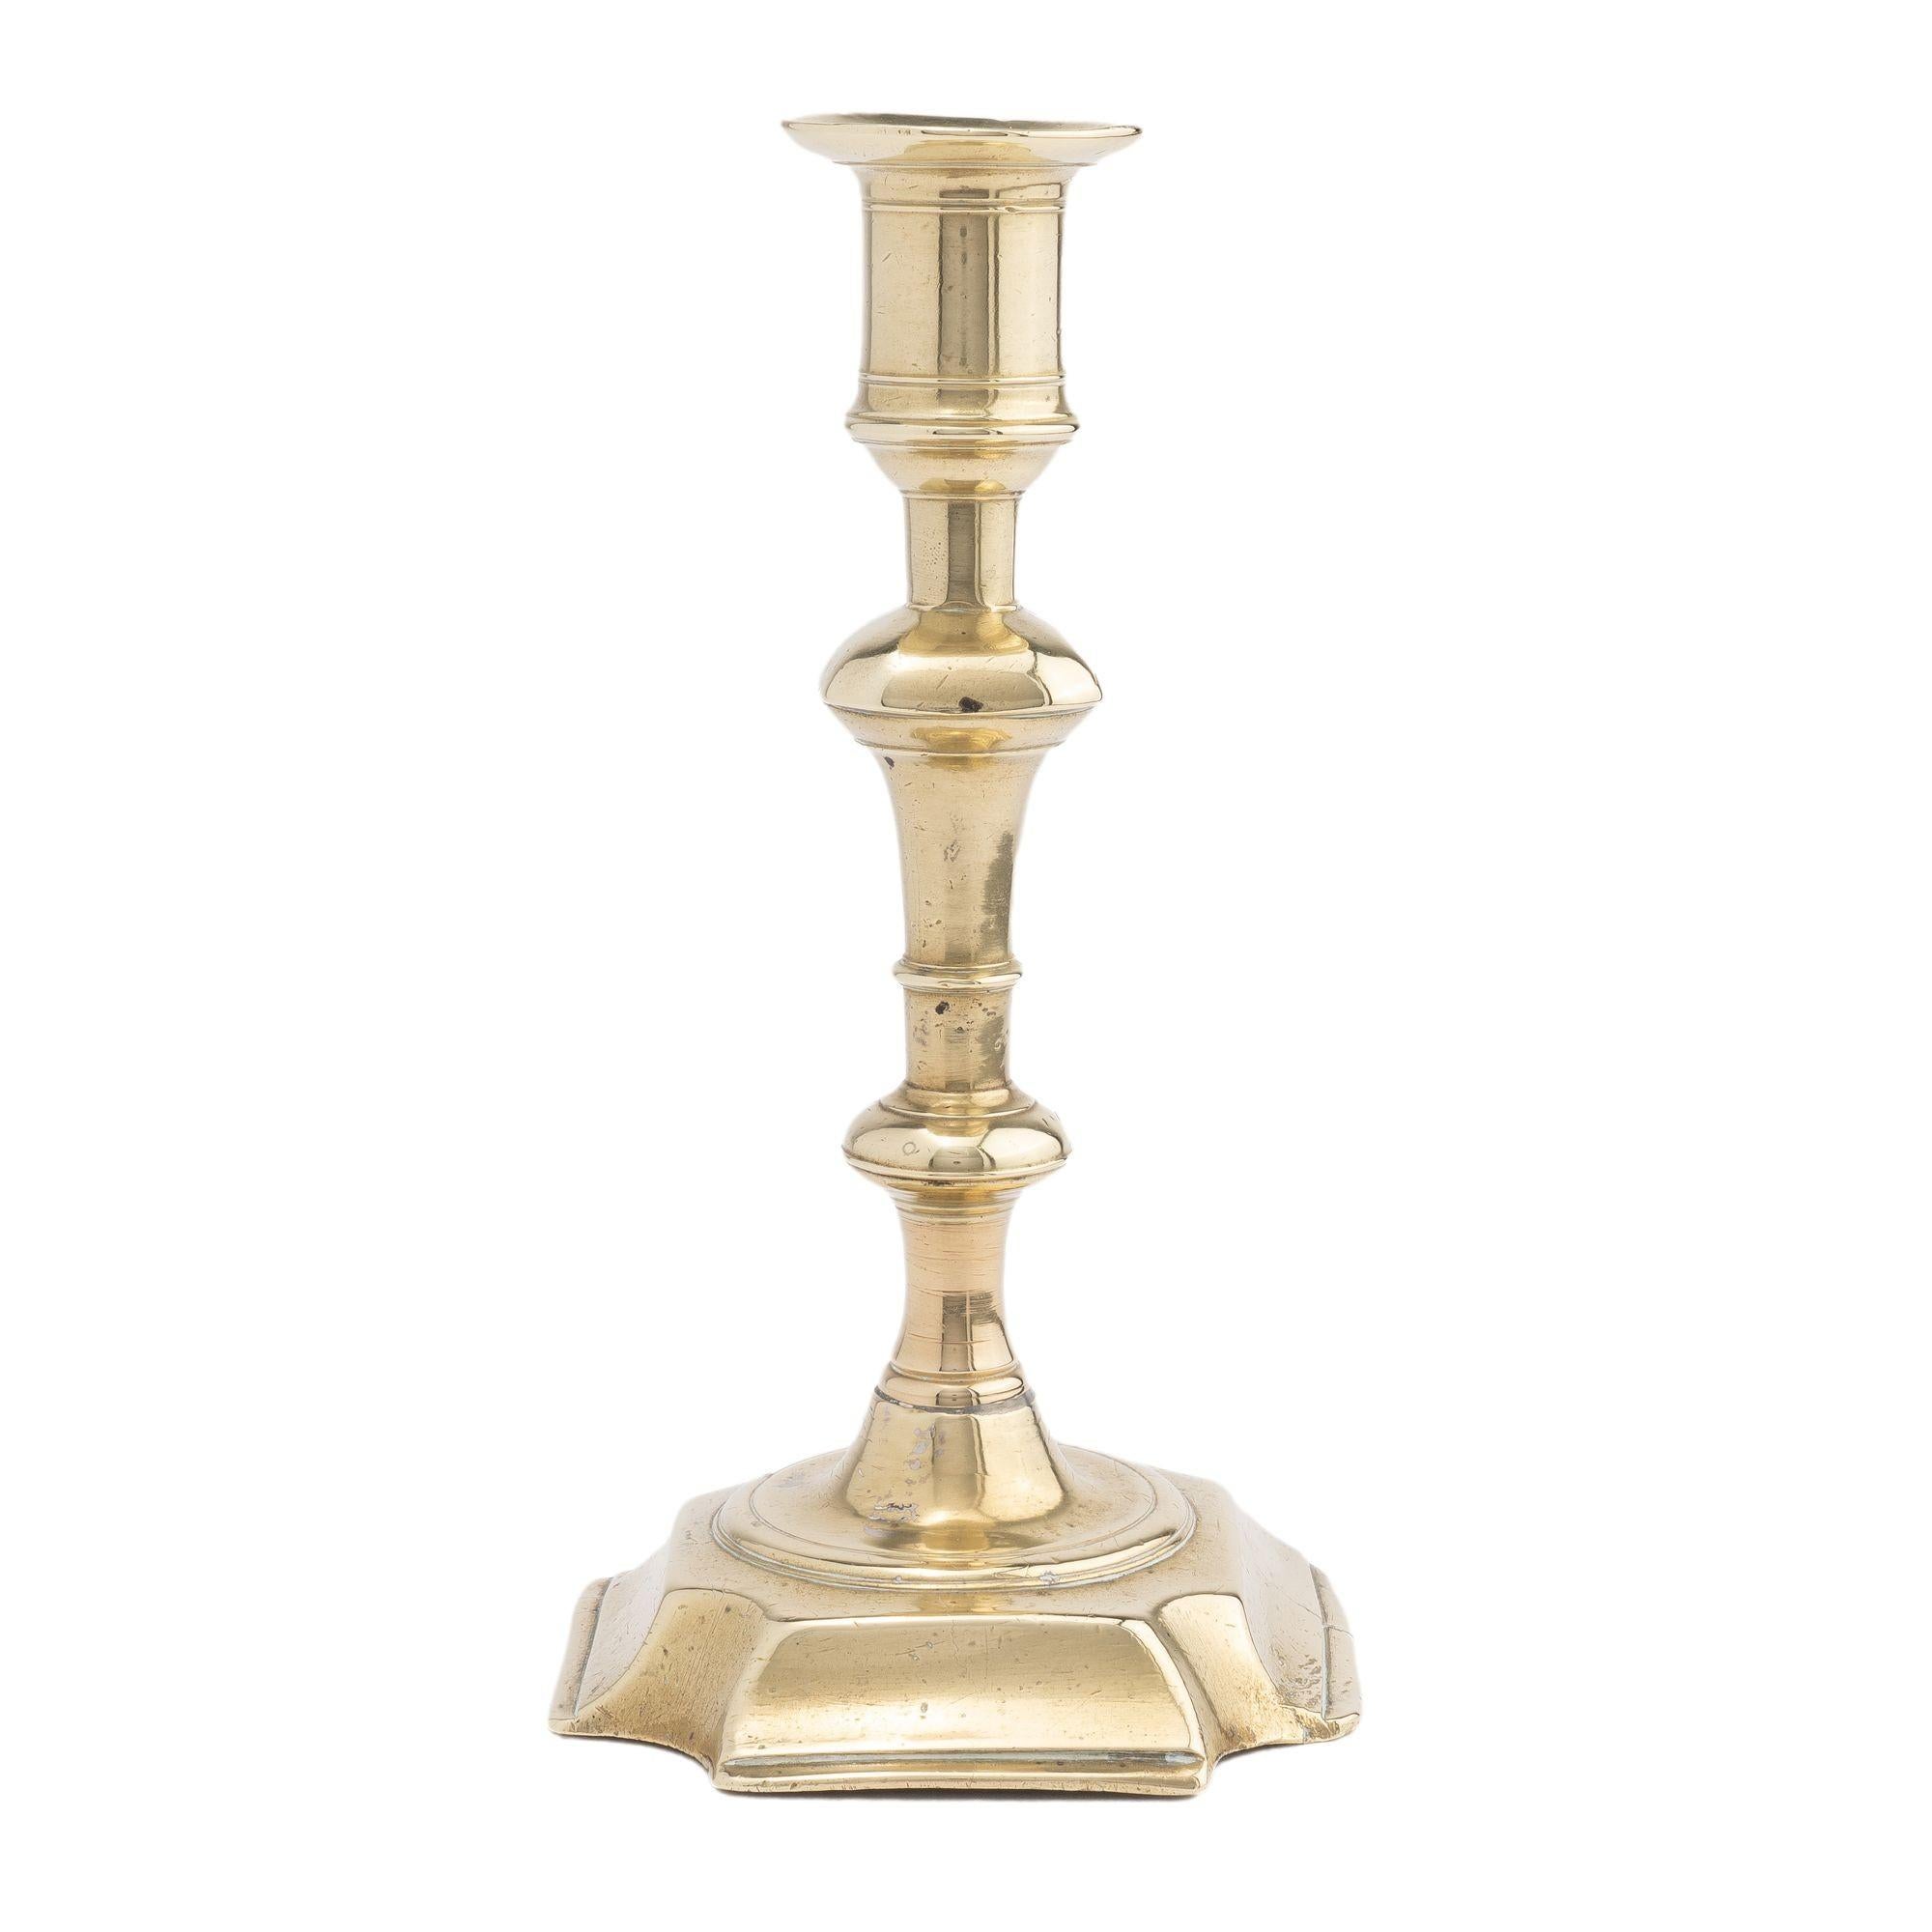 Chandelier Queen Anne en laiton moulé, avec une coupe de bougie en forme d'urne avec une bobèche circulaire, soutenu par un balustre avec un bouton à quatre côtés au-dessus d'un anneau et d'un bouton tourné vers une base carrée surélevée avec des